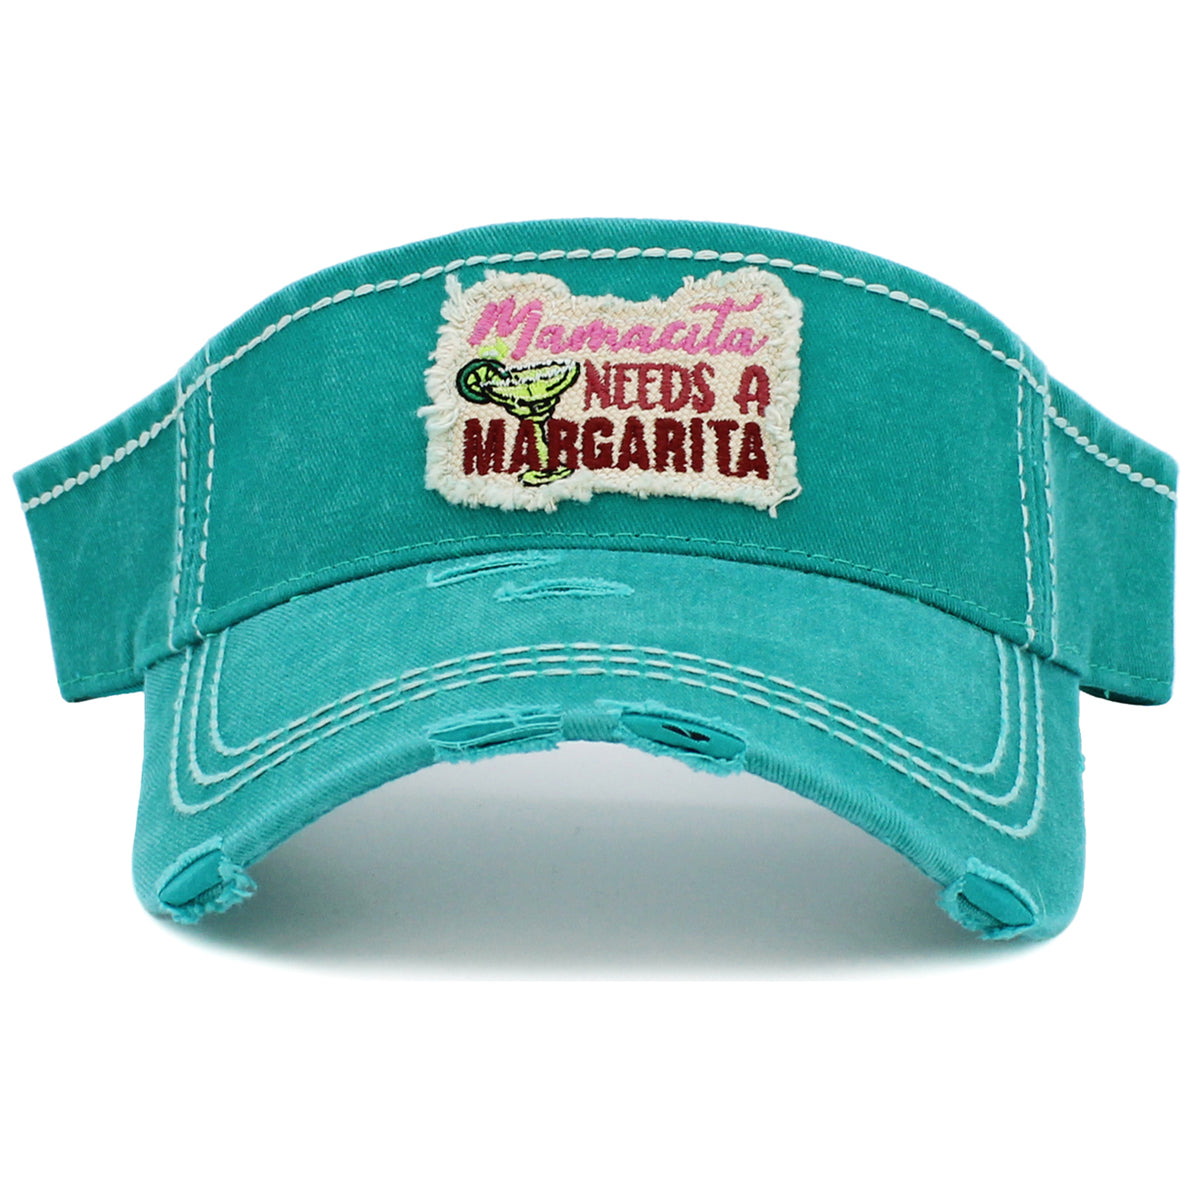 159 - Mamacita Needs a Margarita Visor - Turquoise